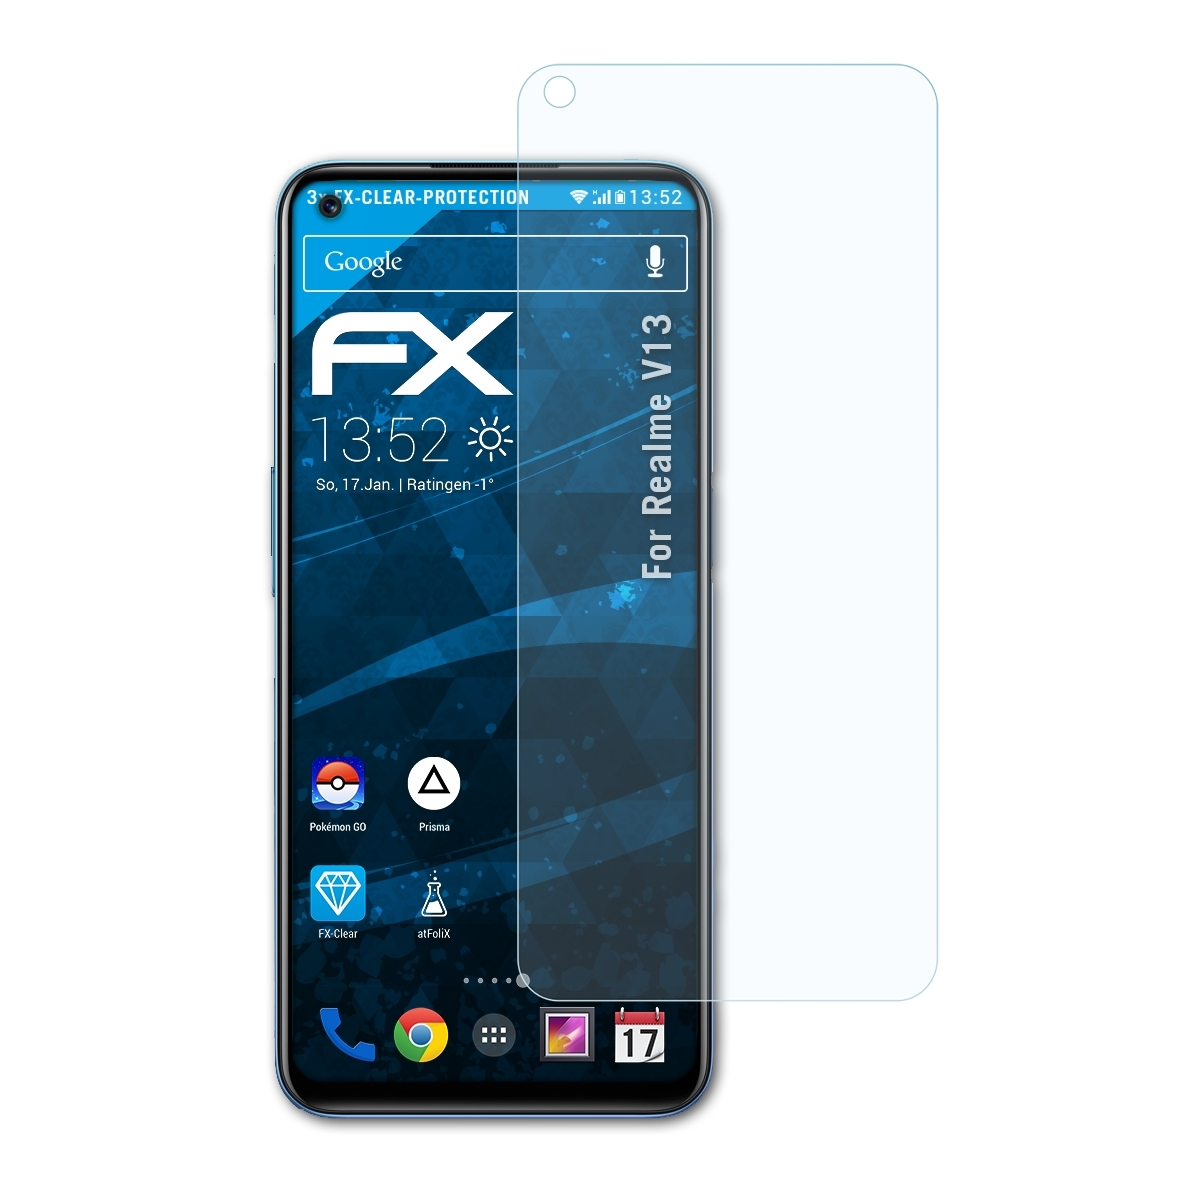 3x FX-Clear V13) Realme Displayschutz(für ATFOLIX